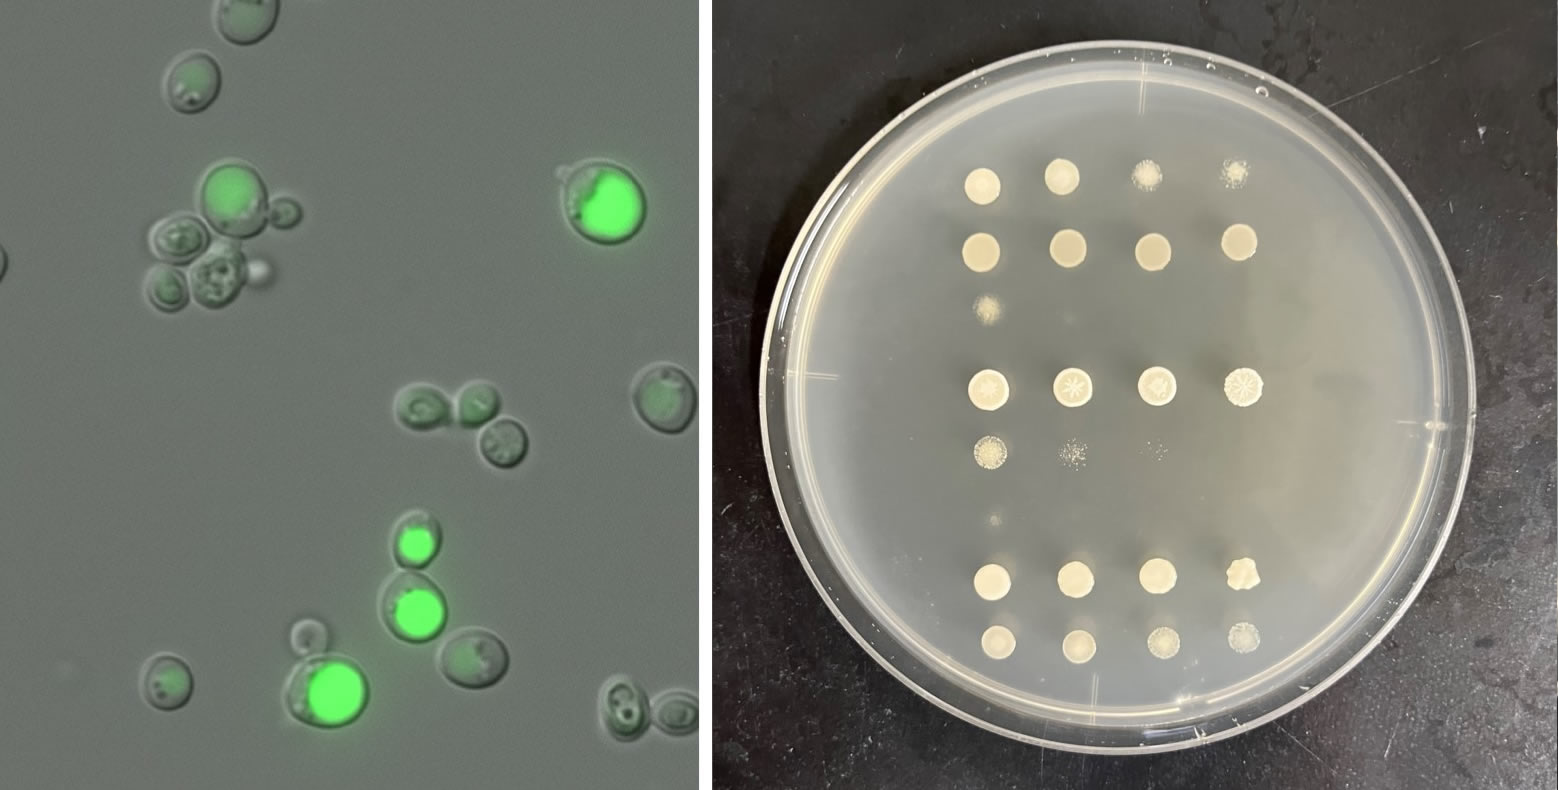 （左）酵母細胞を蛍光光学顕微鏡で観察したもの。（右）スポットアッセイにより各種酵母の生育度合の違いを調べた寒天培地プレートの写真。